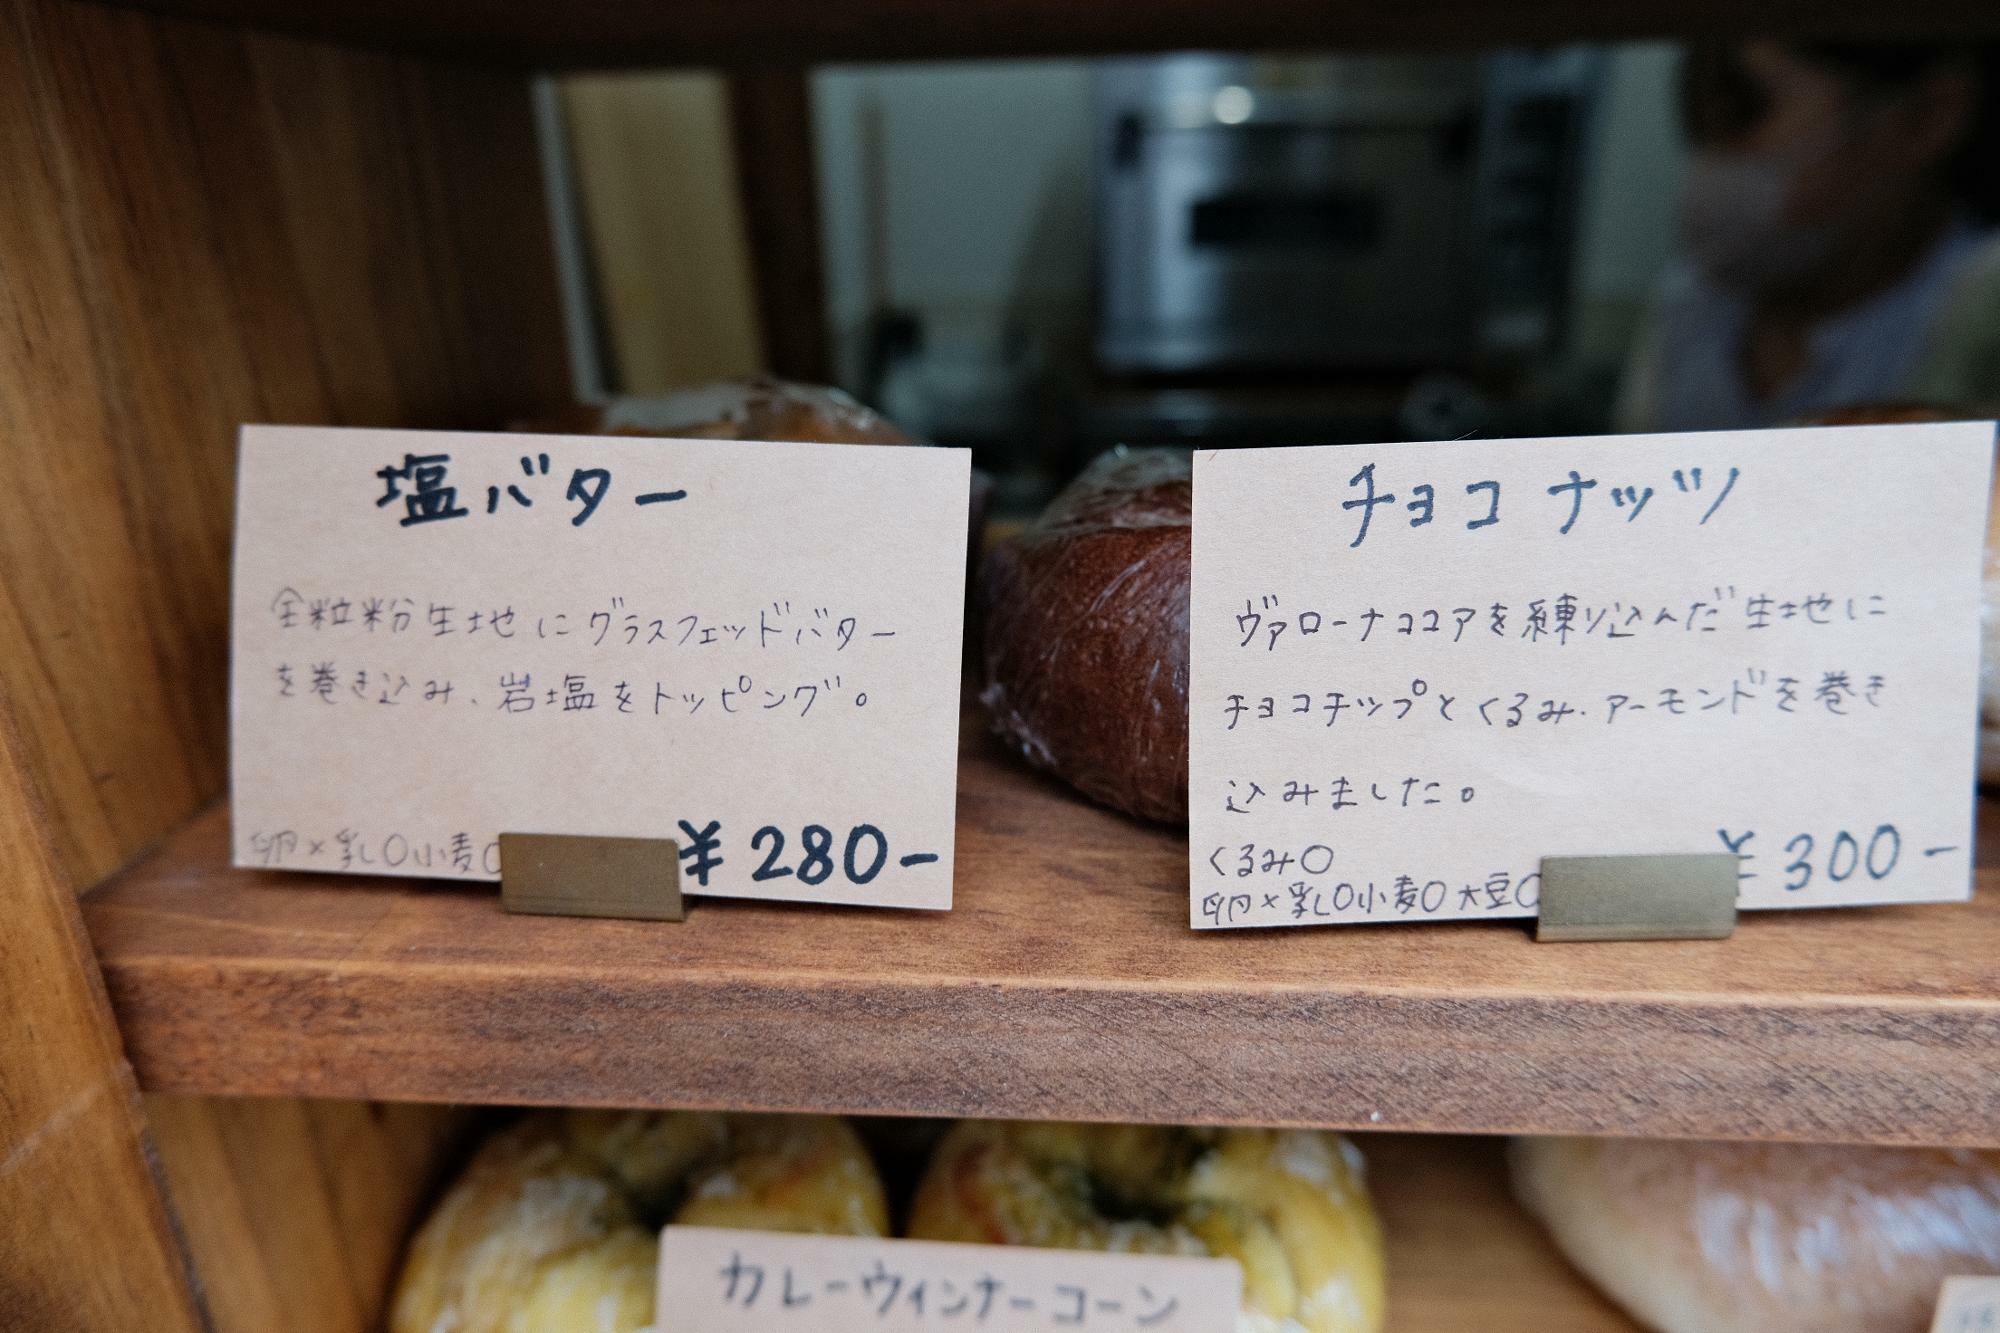 「塩バター」(280円)、「チョコナッツ」(300円)